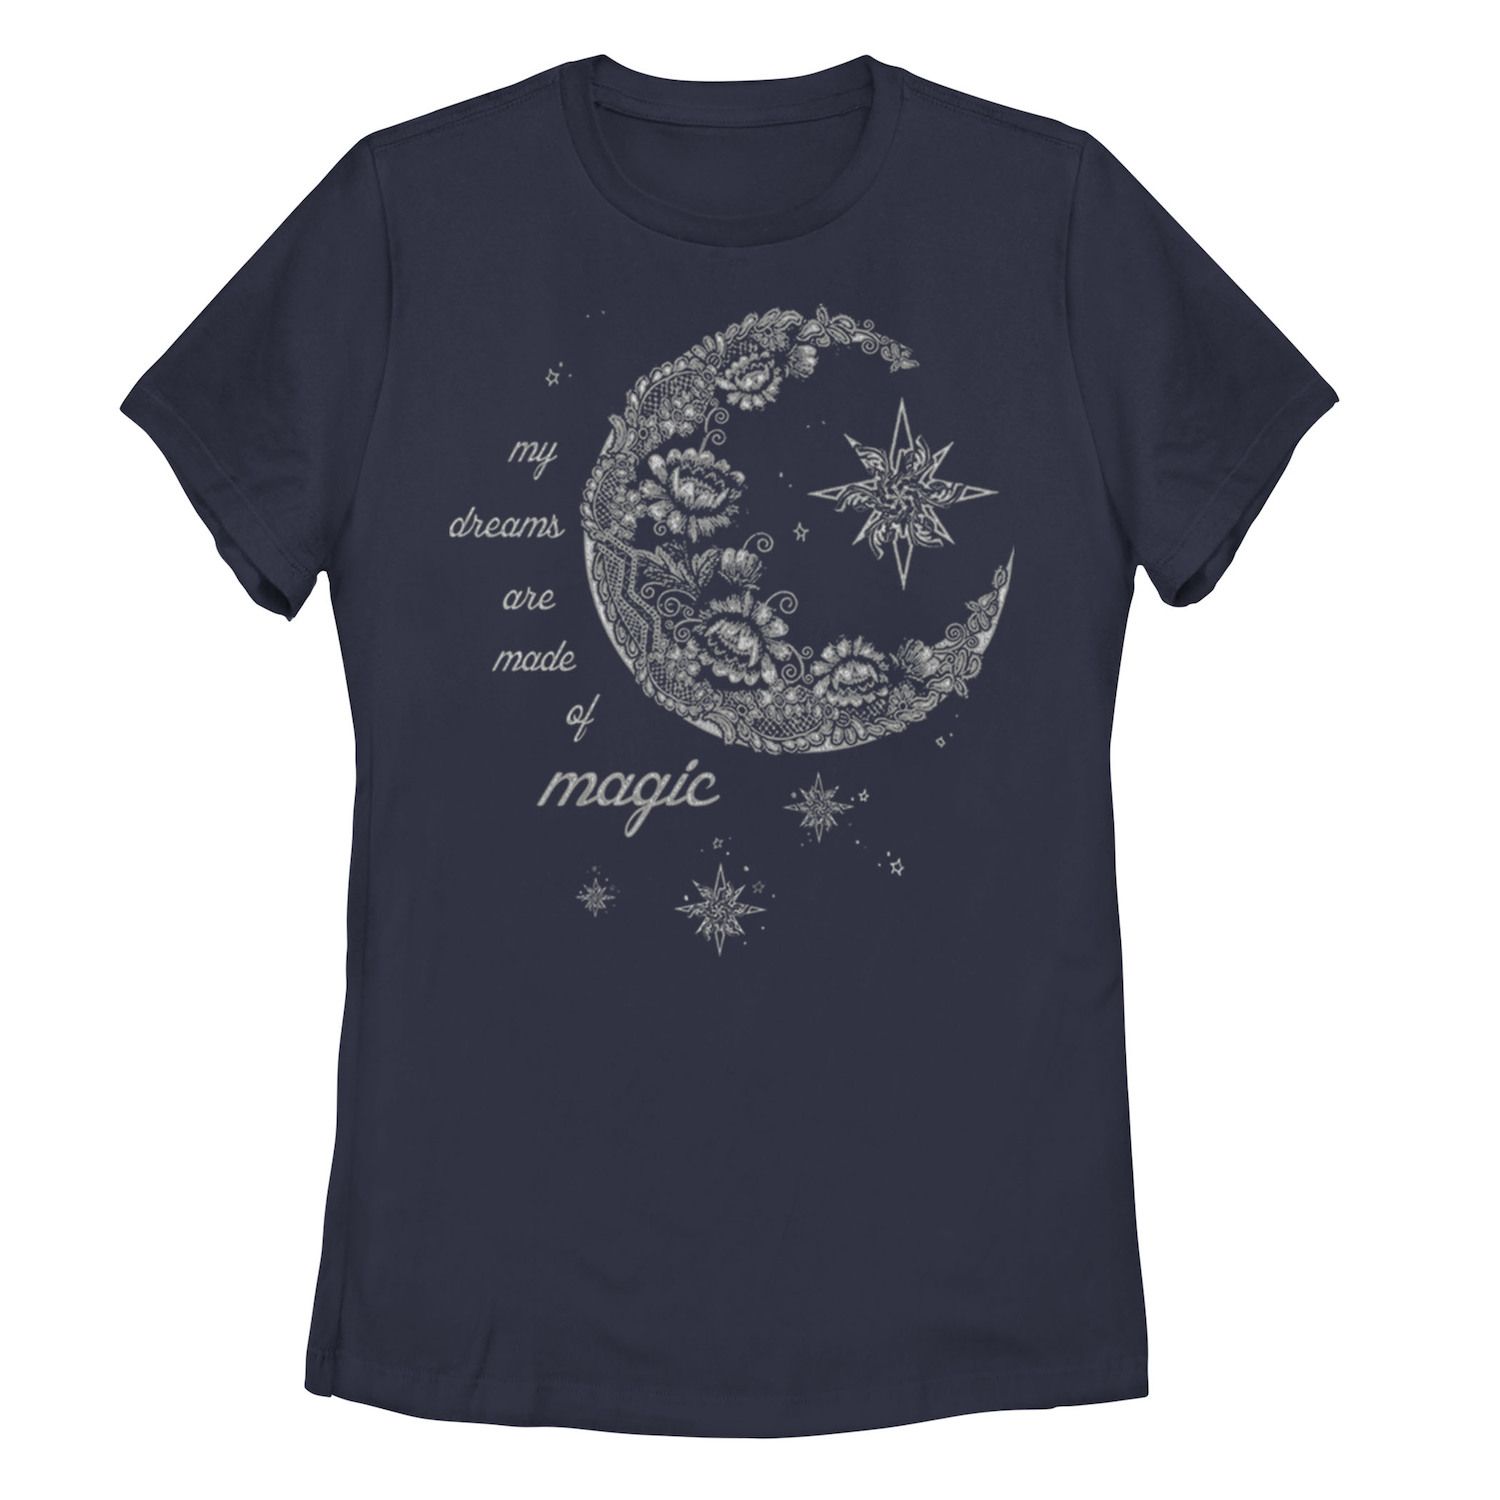 Детская футболка с рисунком «Лунный цветок» и галактическим рисунком, темно-синий